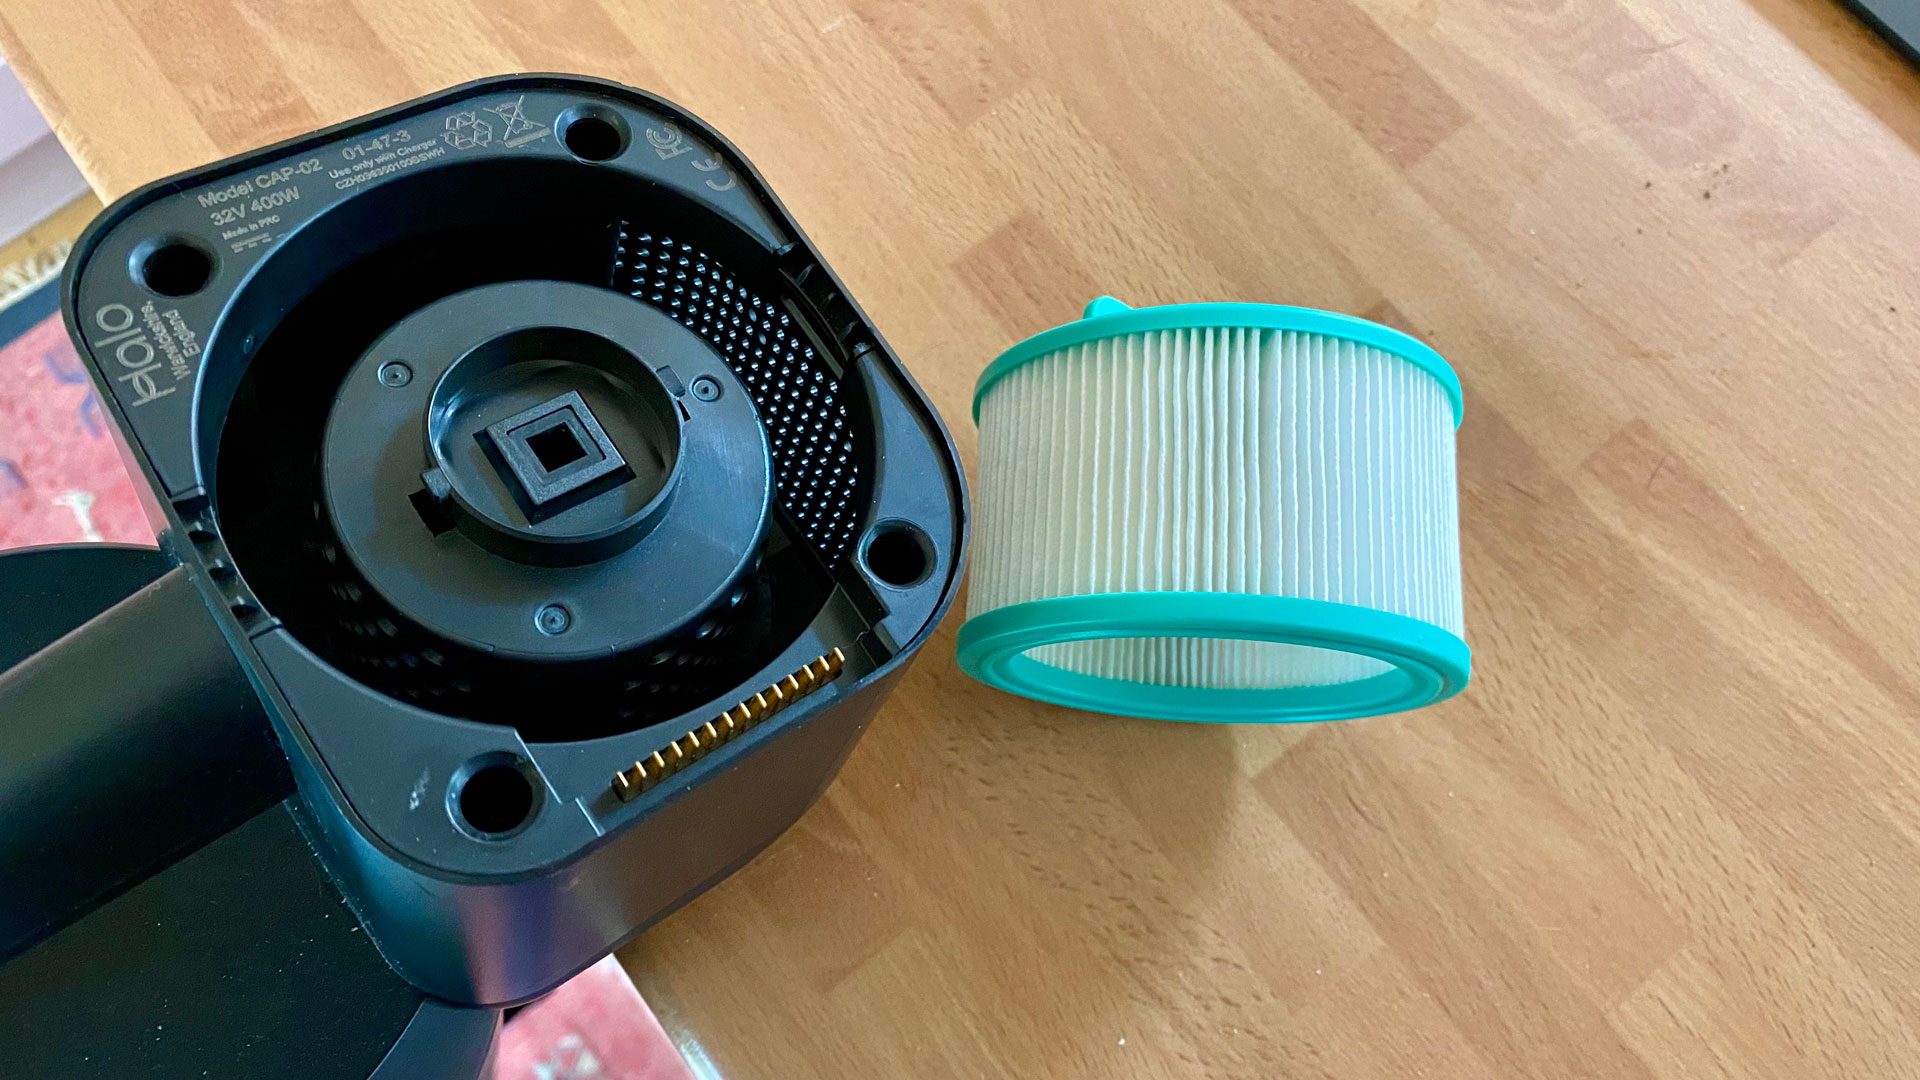 The Halo Capsule X Pet Max vacuum cleaner's filter